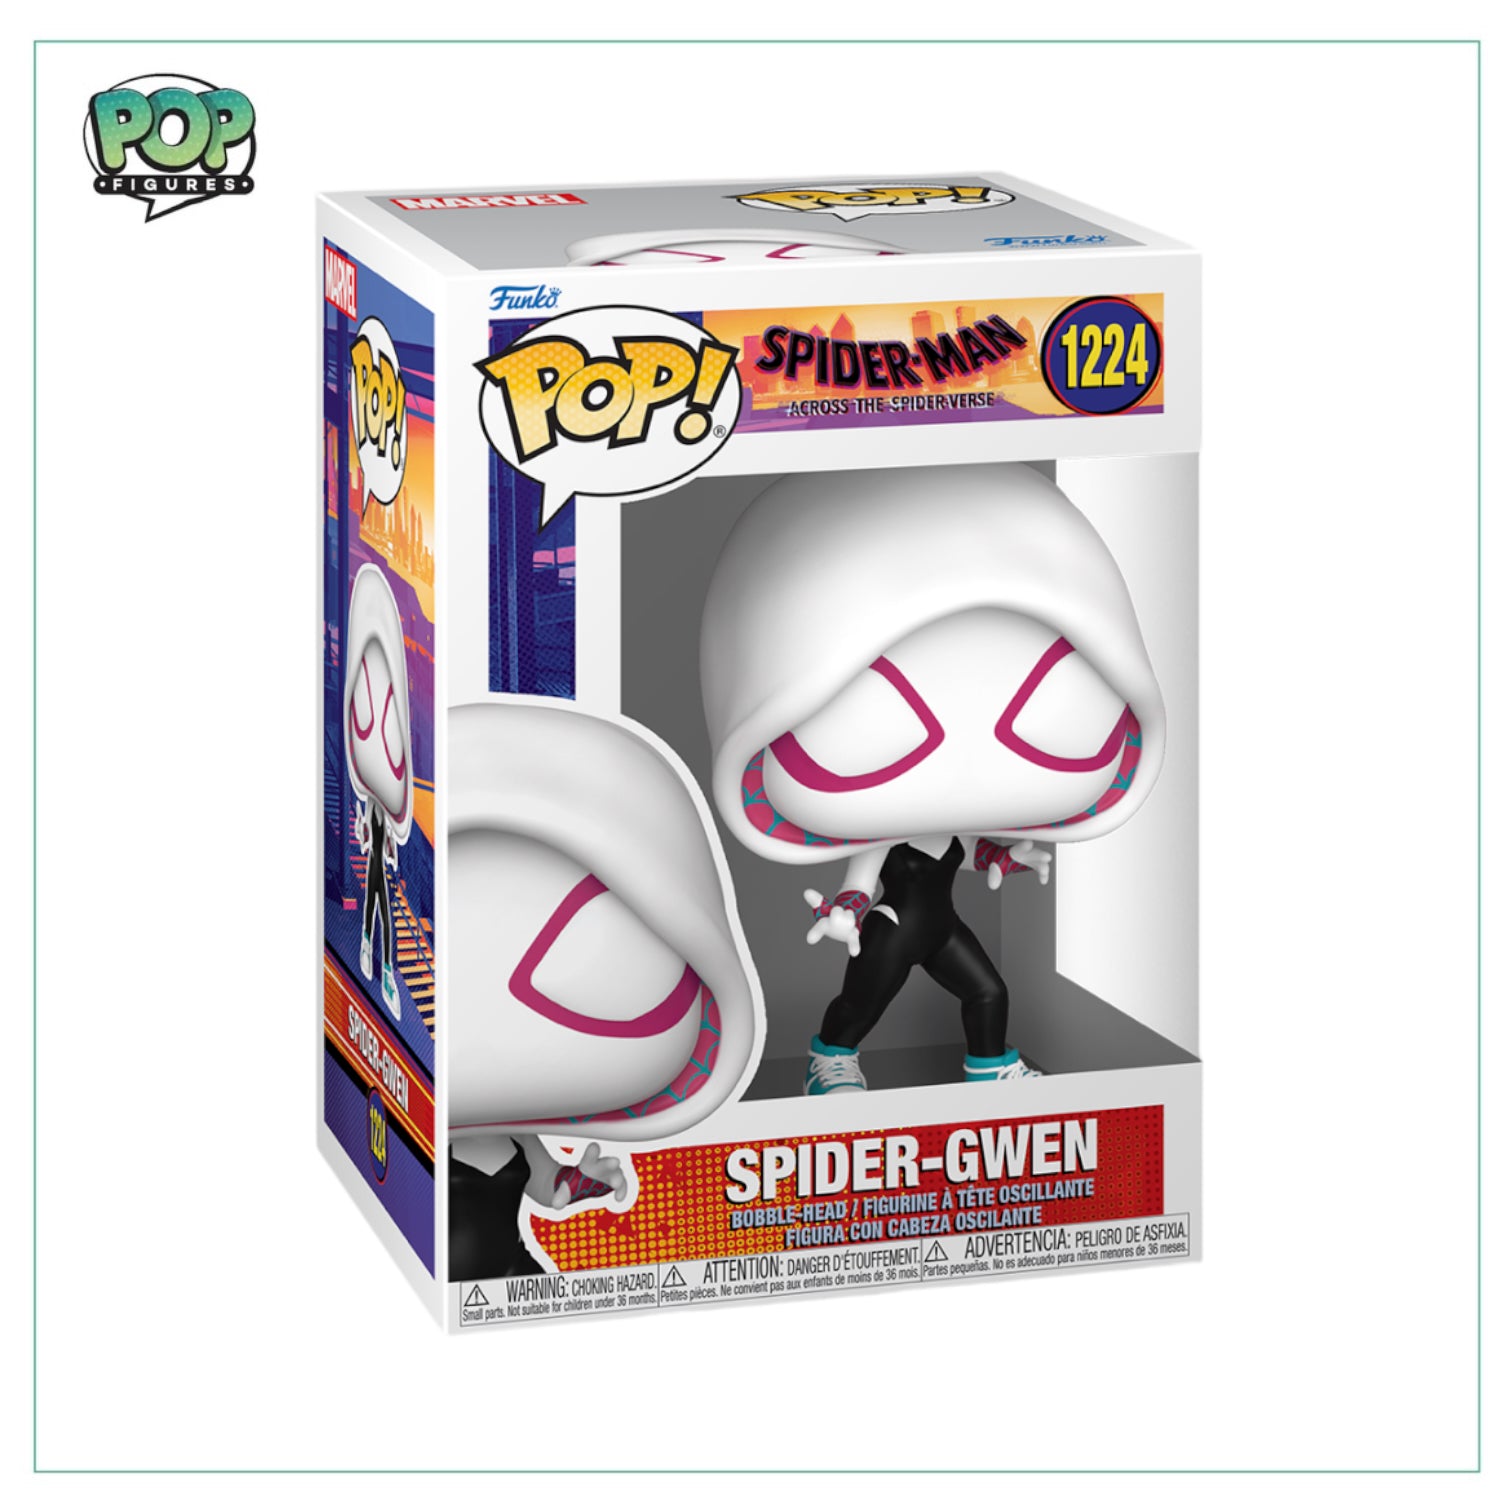 Spider-Gwen #1224 Funko Pop! Spider-Man across the Spiderverse